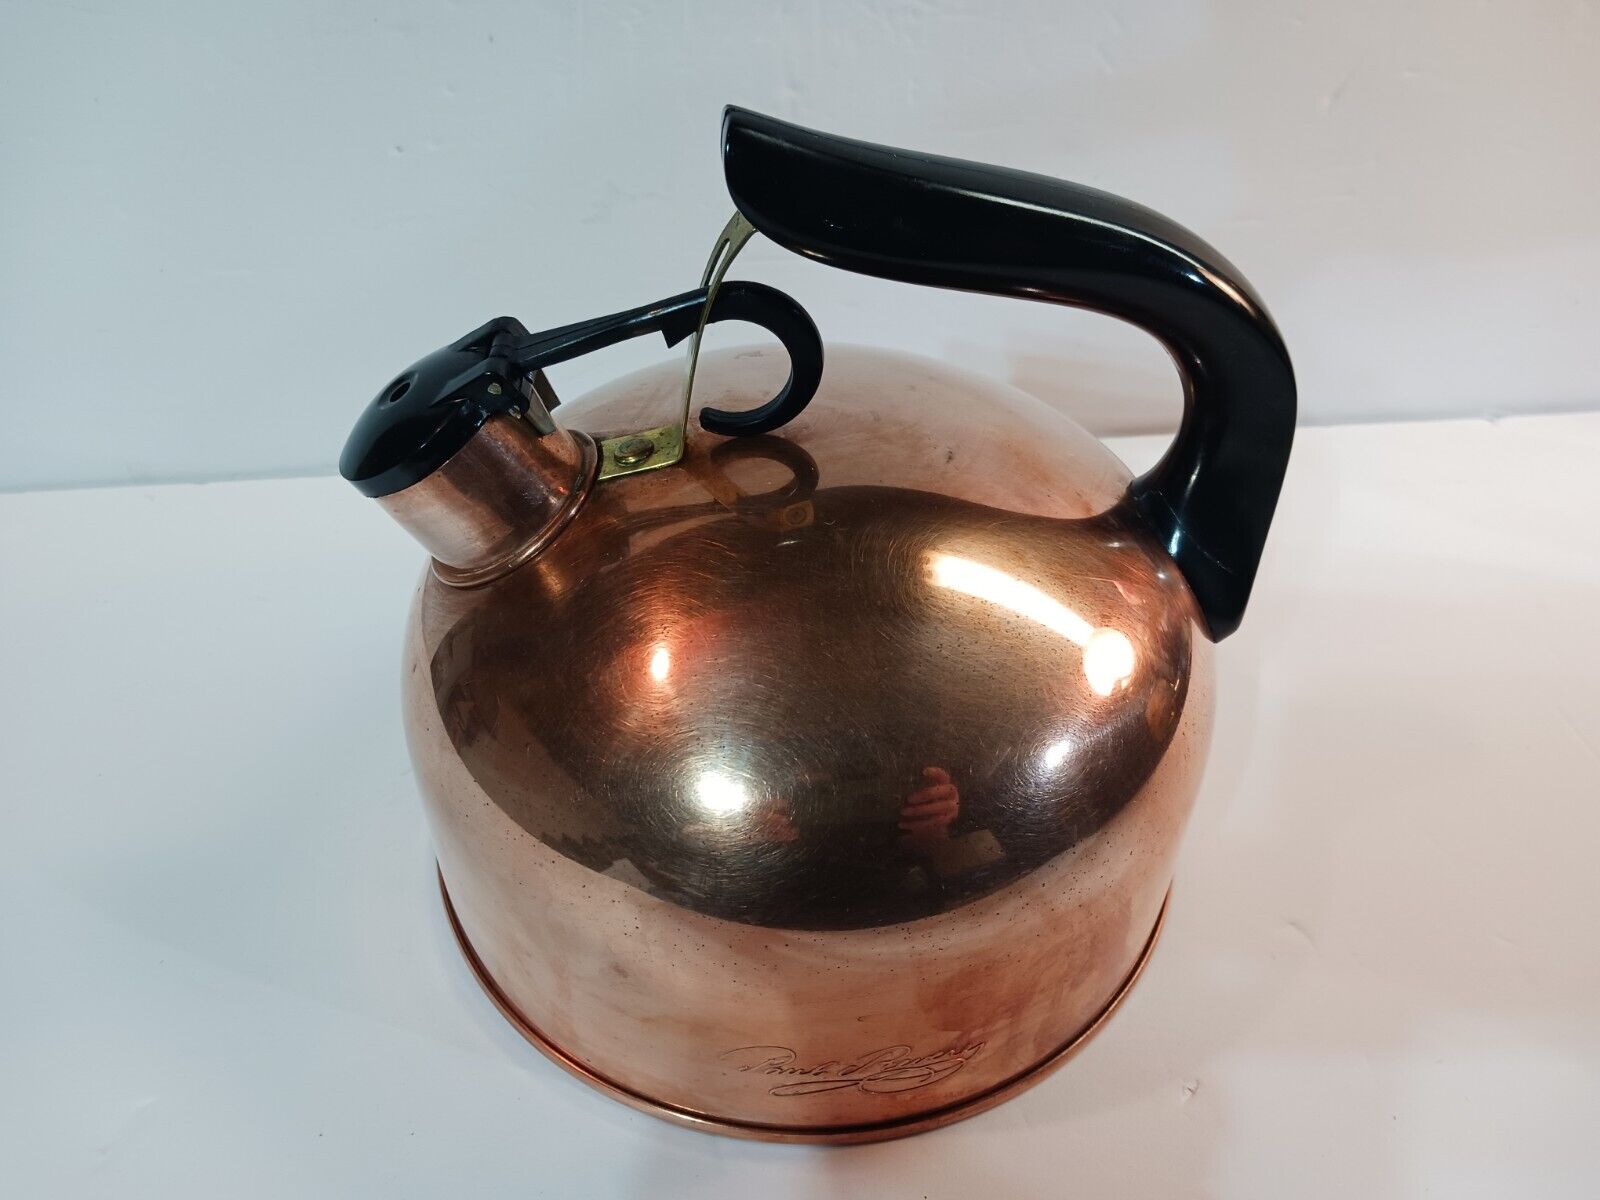 Paul Revere Ware Whistling Rare All Copper & Brass Tea Kettle Rome, NY U.S.A.